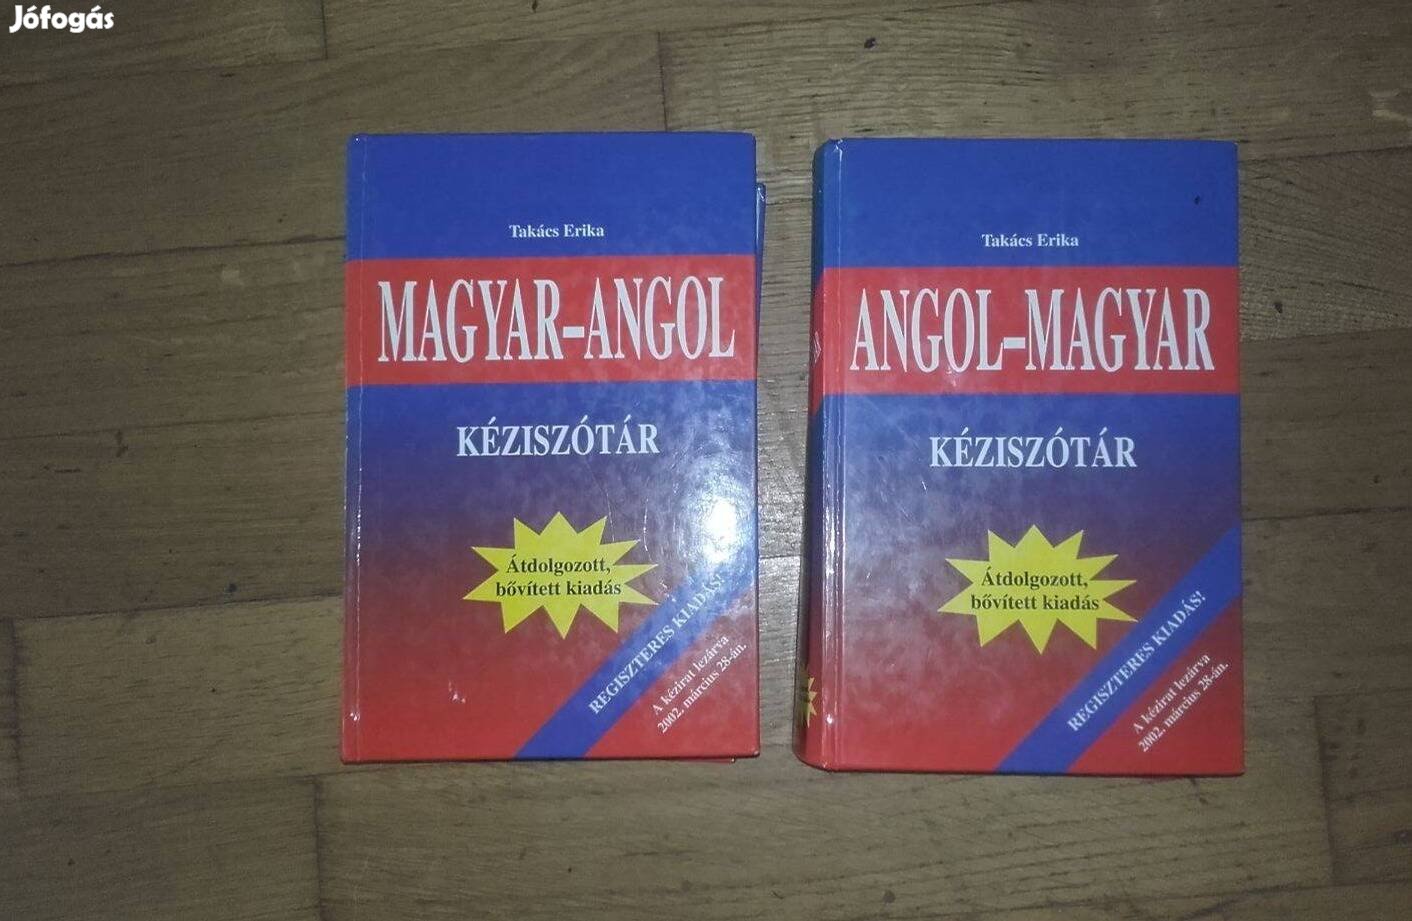 Magyar-angol, angol-magyar szótár egyben eladó